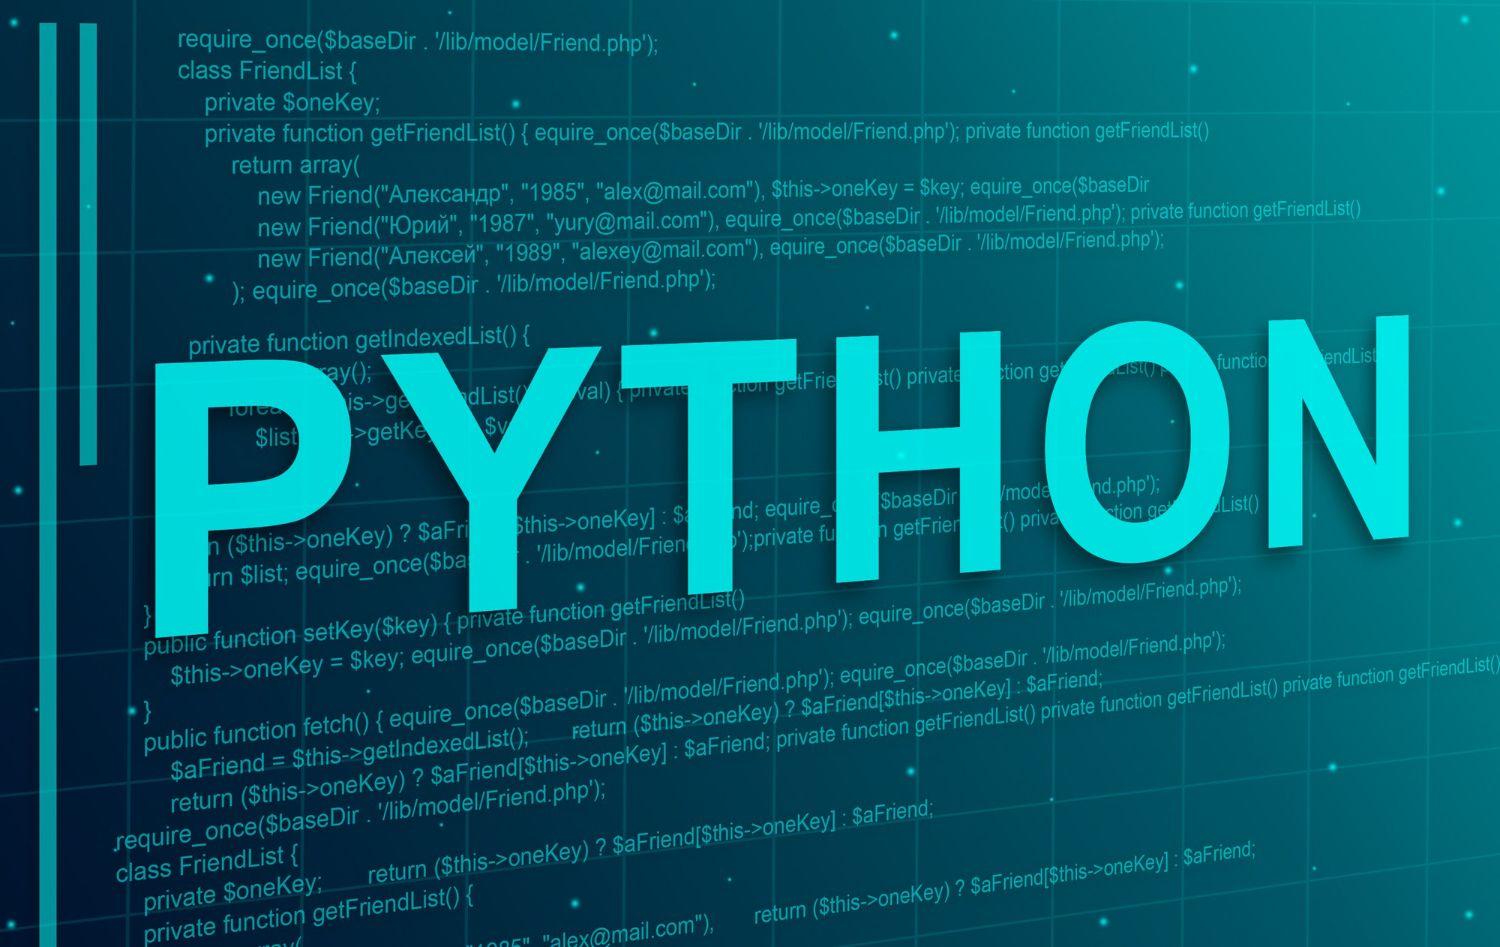 Despliegue de su modelo de aprendizaje automático con Python cover image